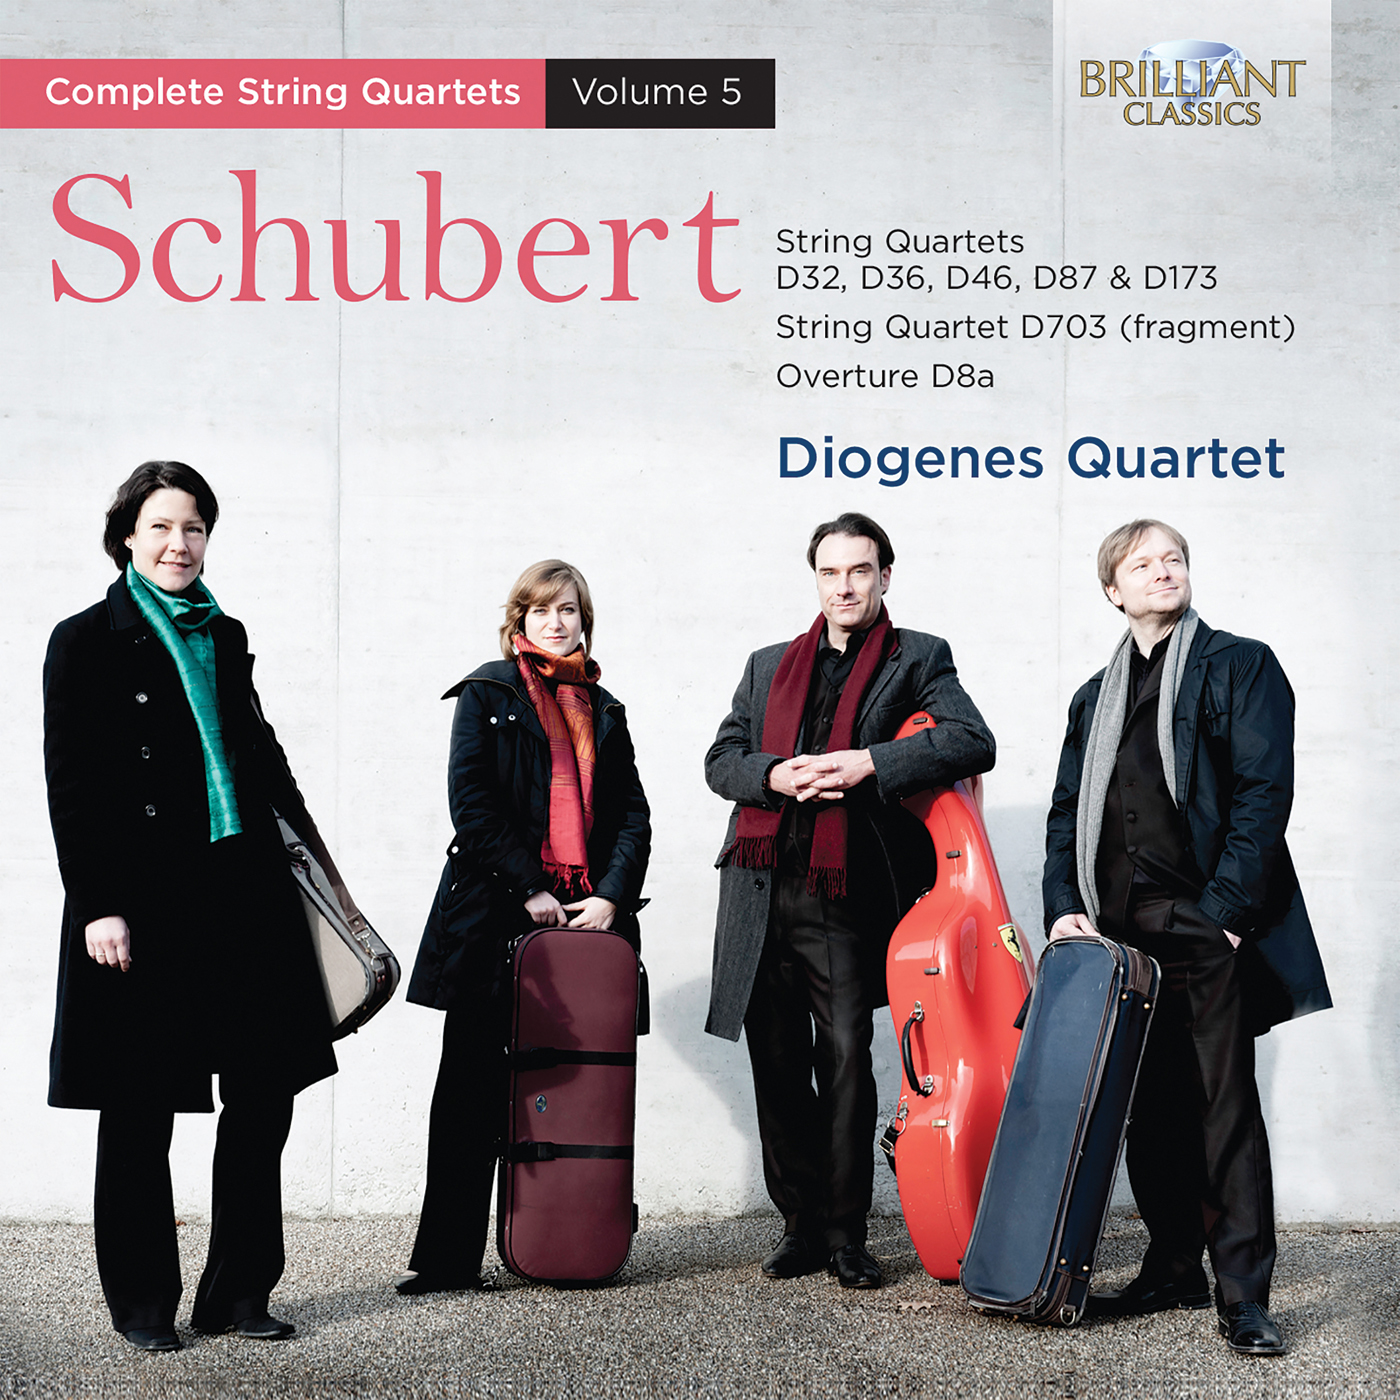 Schubert: Complete String Quartets vol. 5 - Brilliant Classics